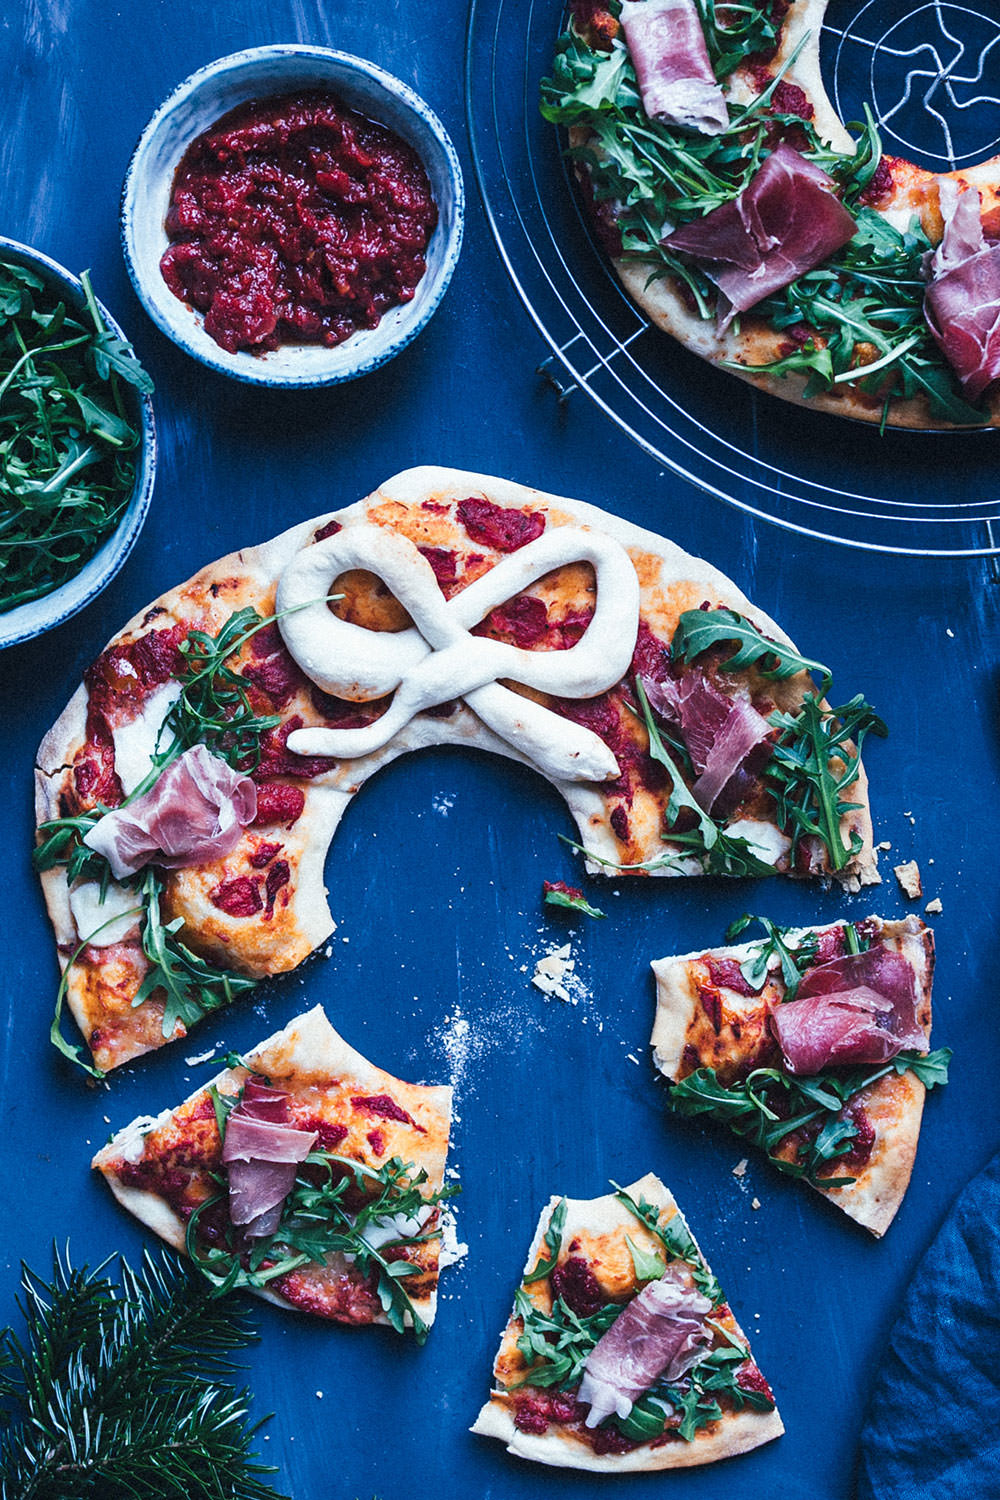 Rezept für festlichen Pizza-Kranz mit Rucola und Serrano-Schinken | moeyskitchen.com #pizza #rezept #weihnachten #rezepte #foodblogger